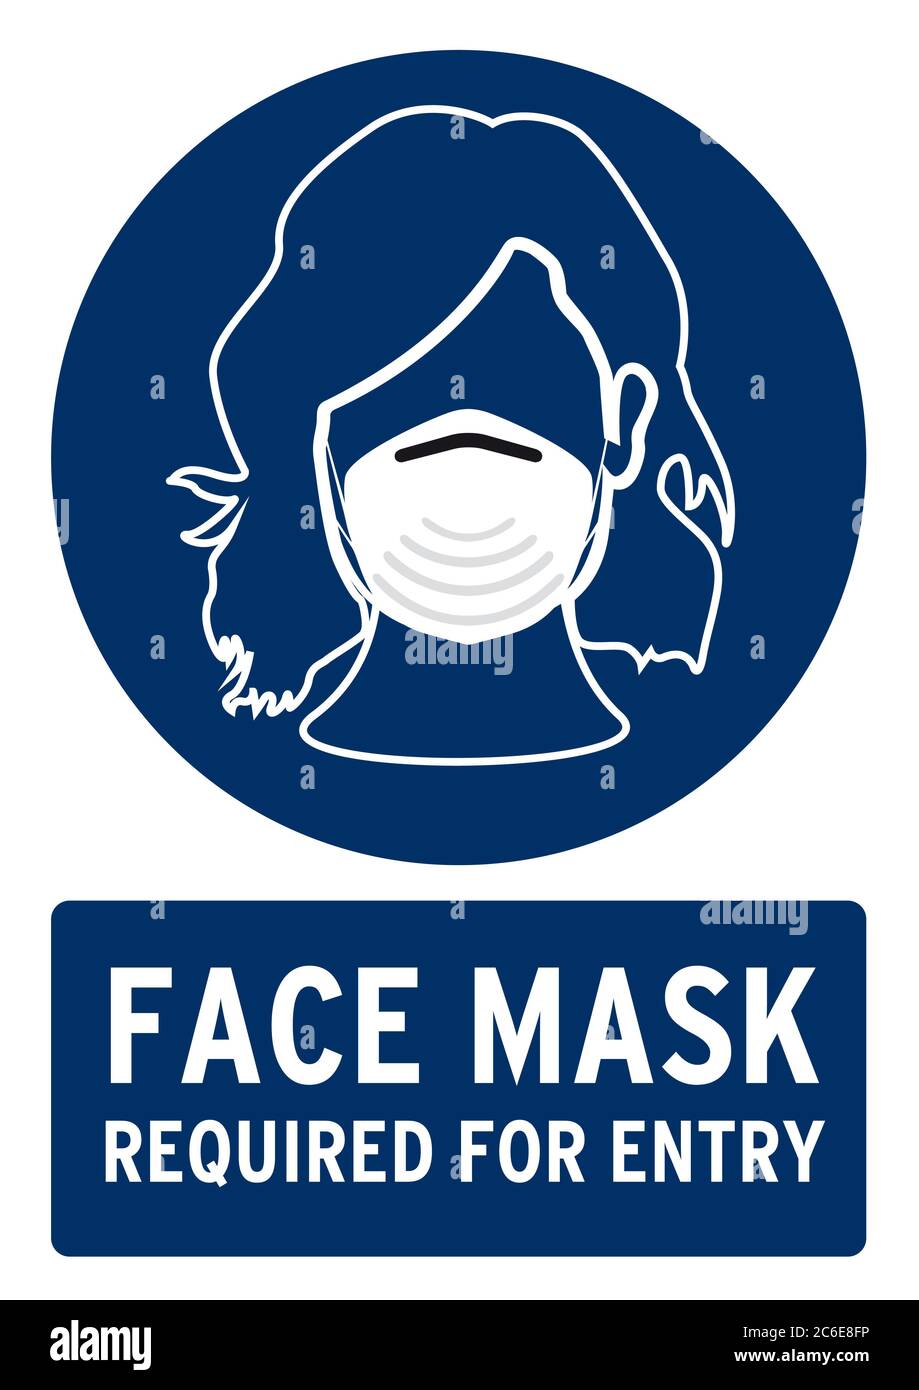 Maschera facciale richiesta per l'ingresso (icona donne). Poster per il covid19 in lingua inglese. Foto Stock